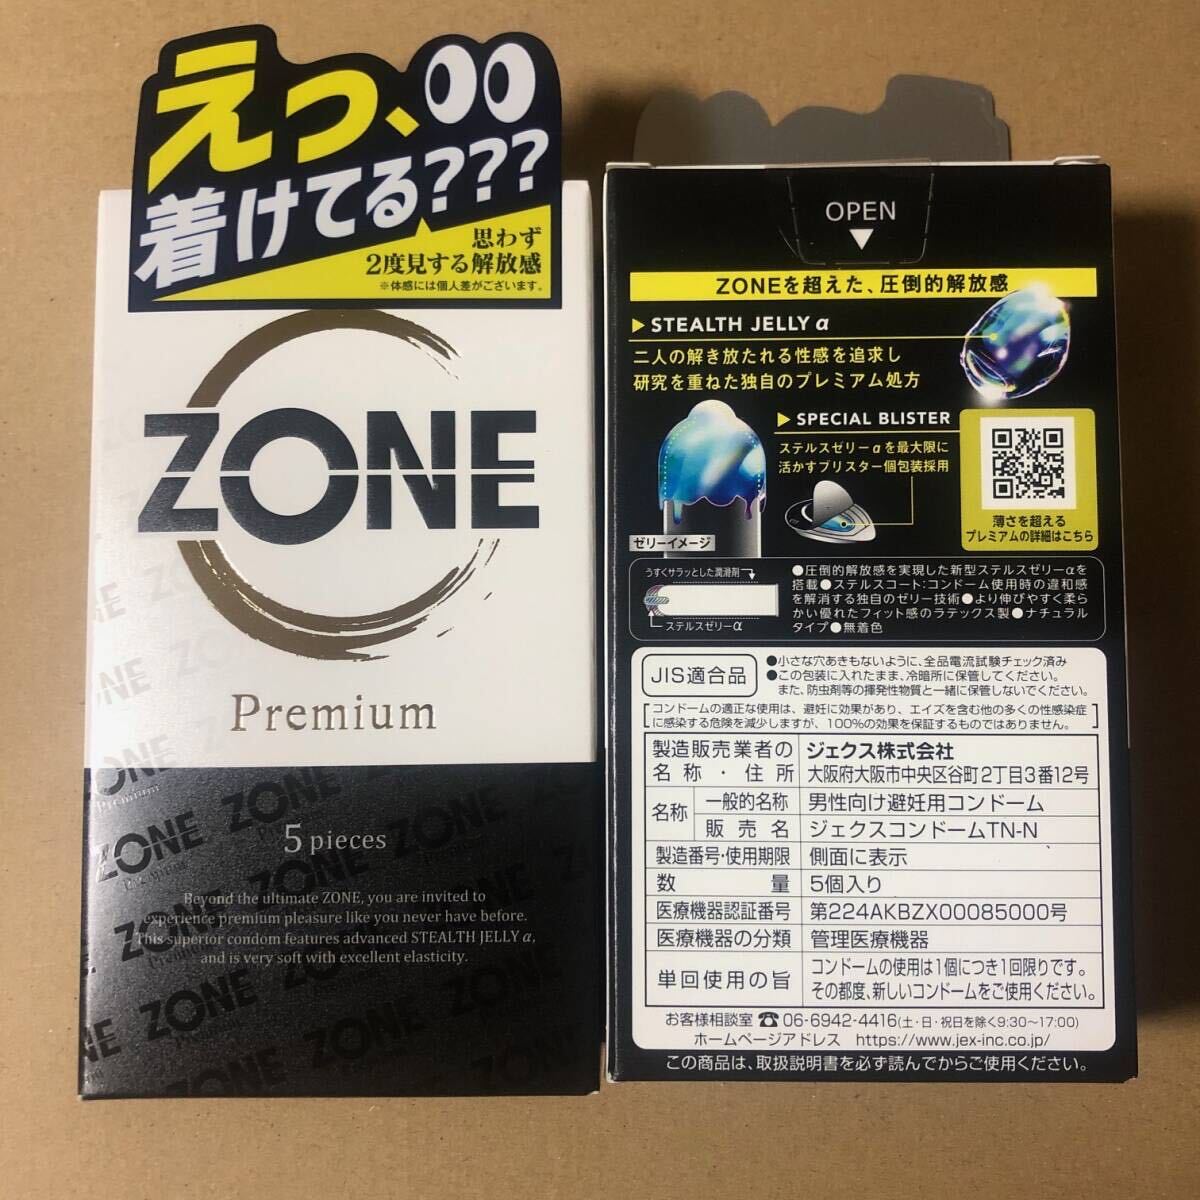 ZONE プレミアム コンドーム 5個入り×1箱、ZONE 6個入り×1箱（ゴム スキン 避妊具）